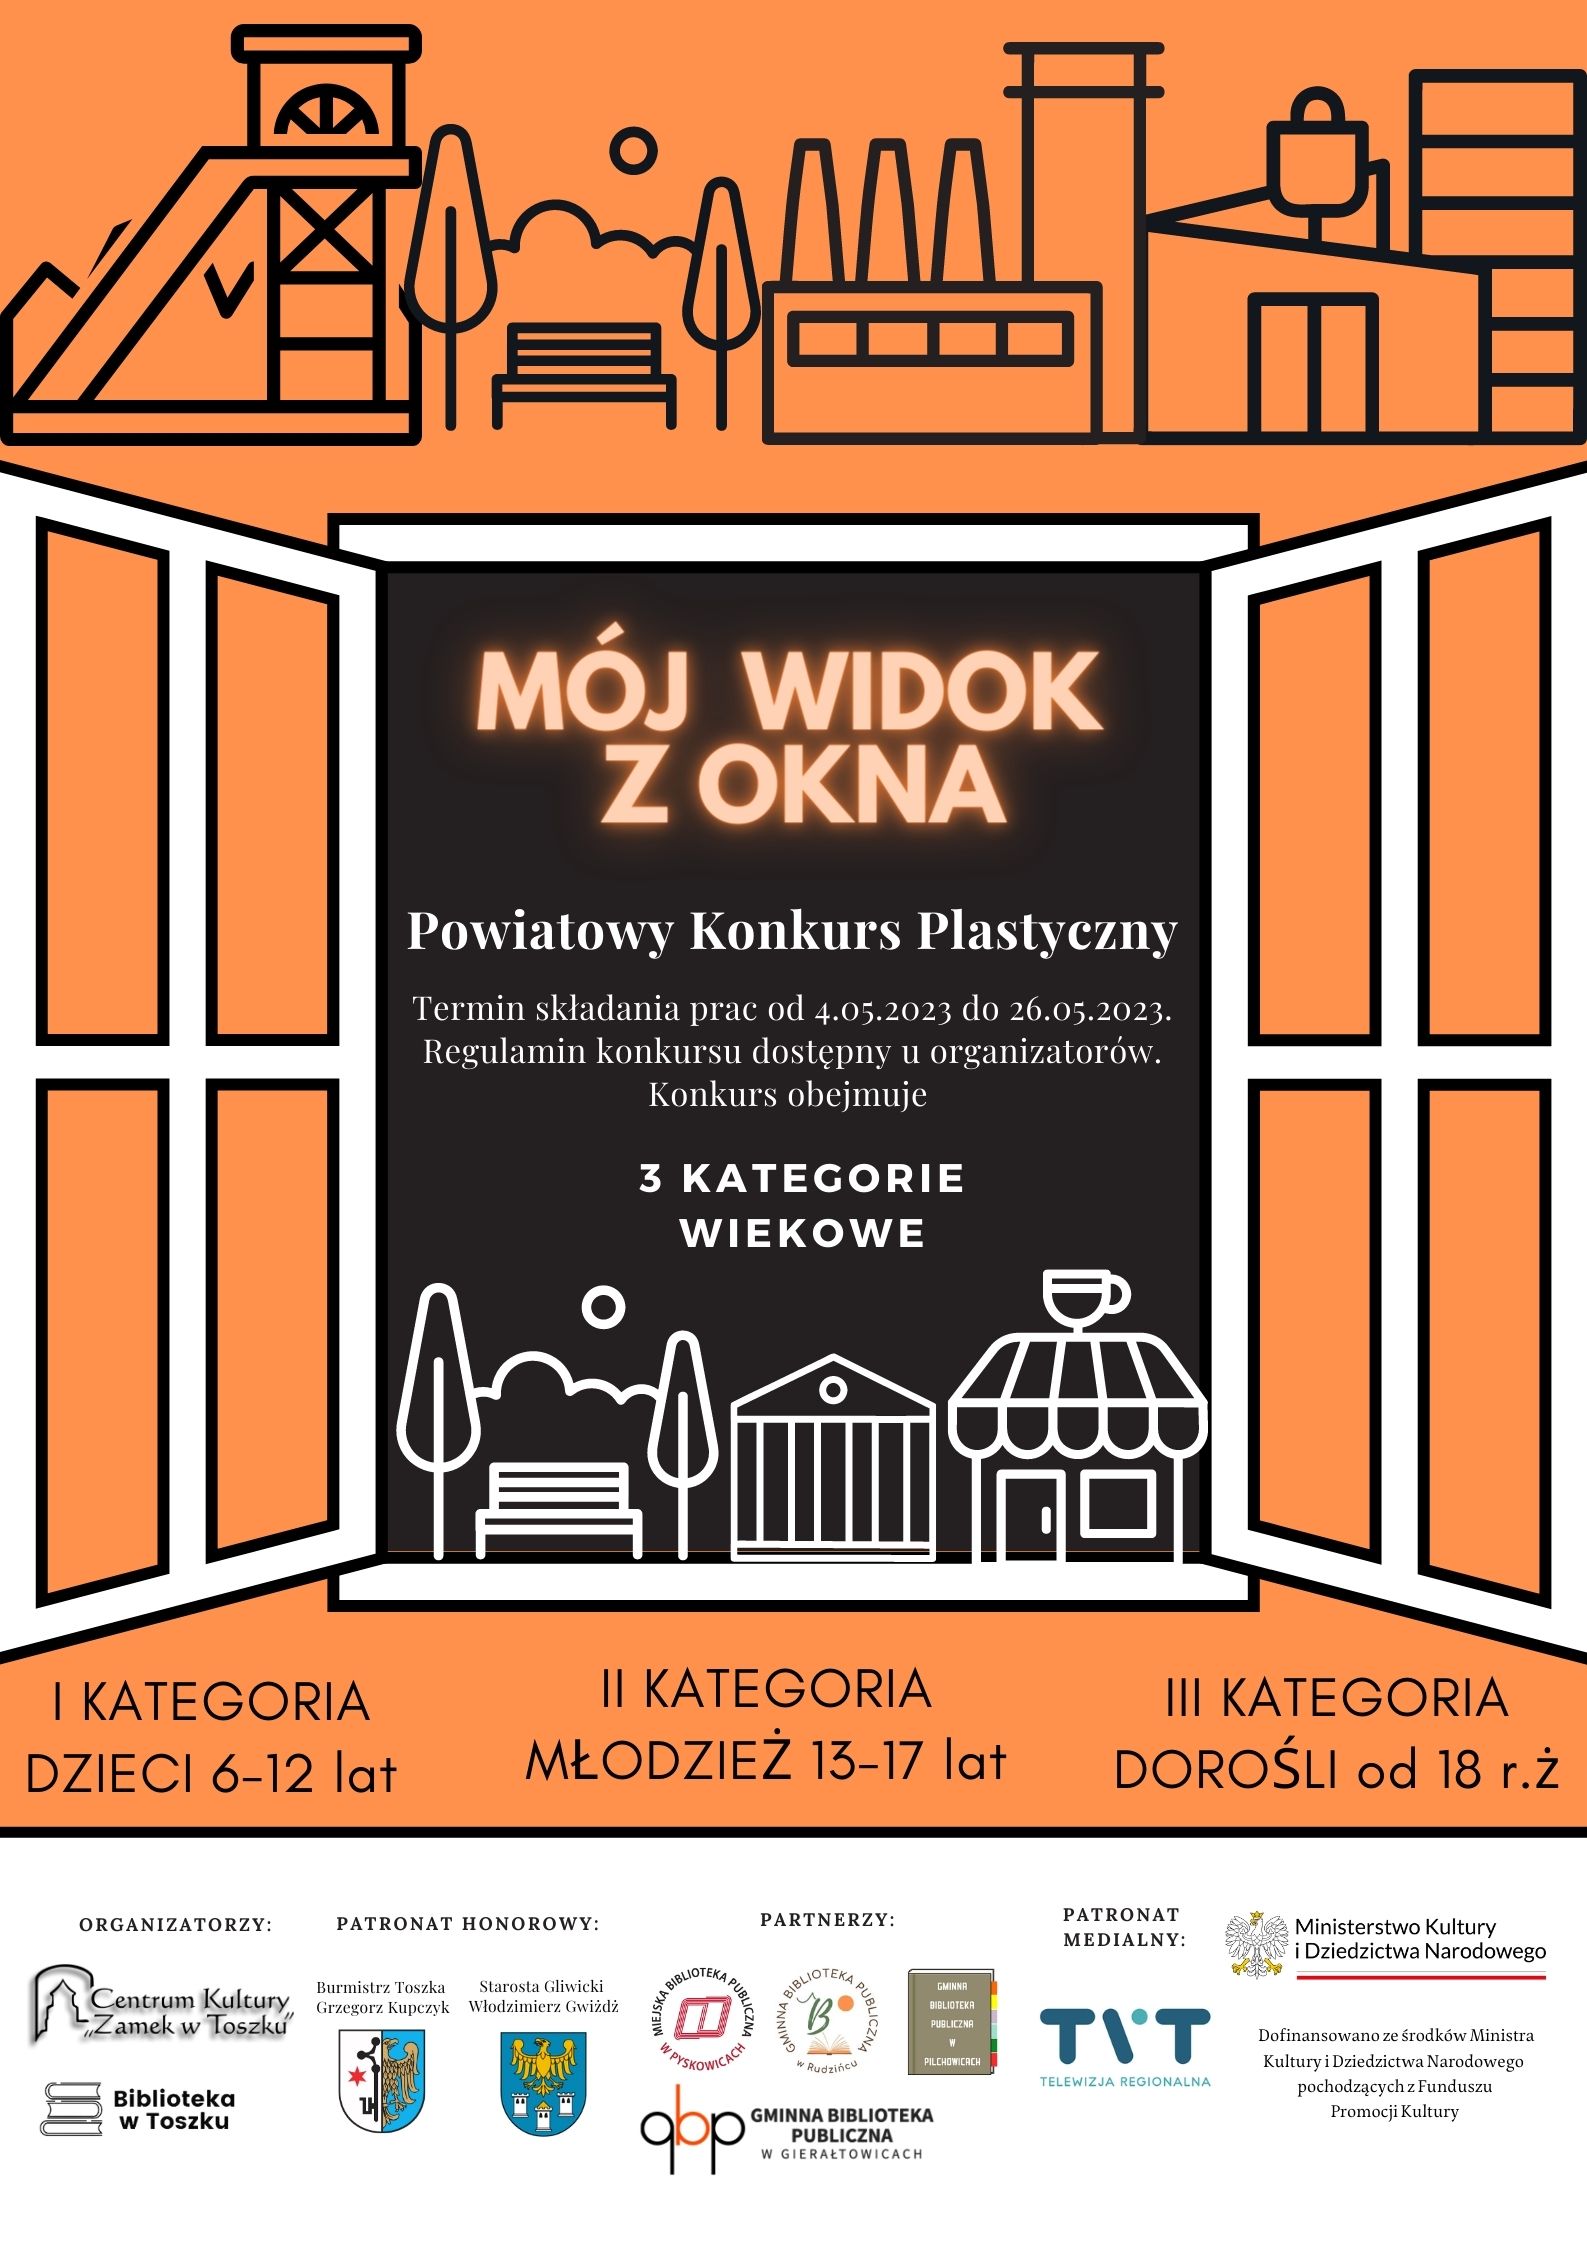 Powiatowy konkurs plastyczny "Mój widok z okna" - składanie prac od 4 do 26go maja 2023r.